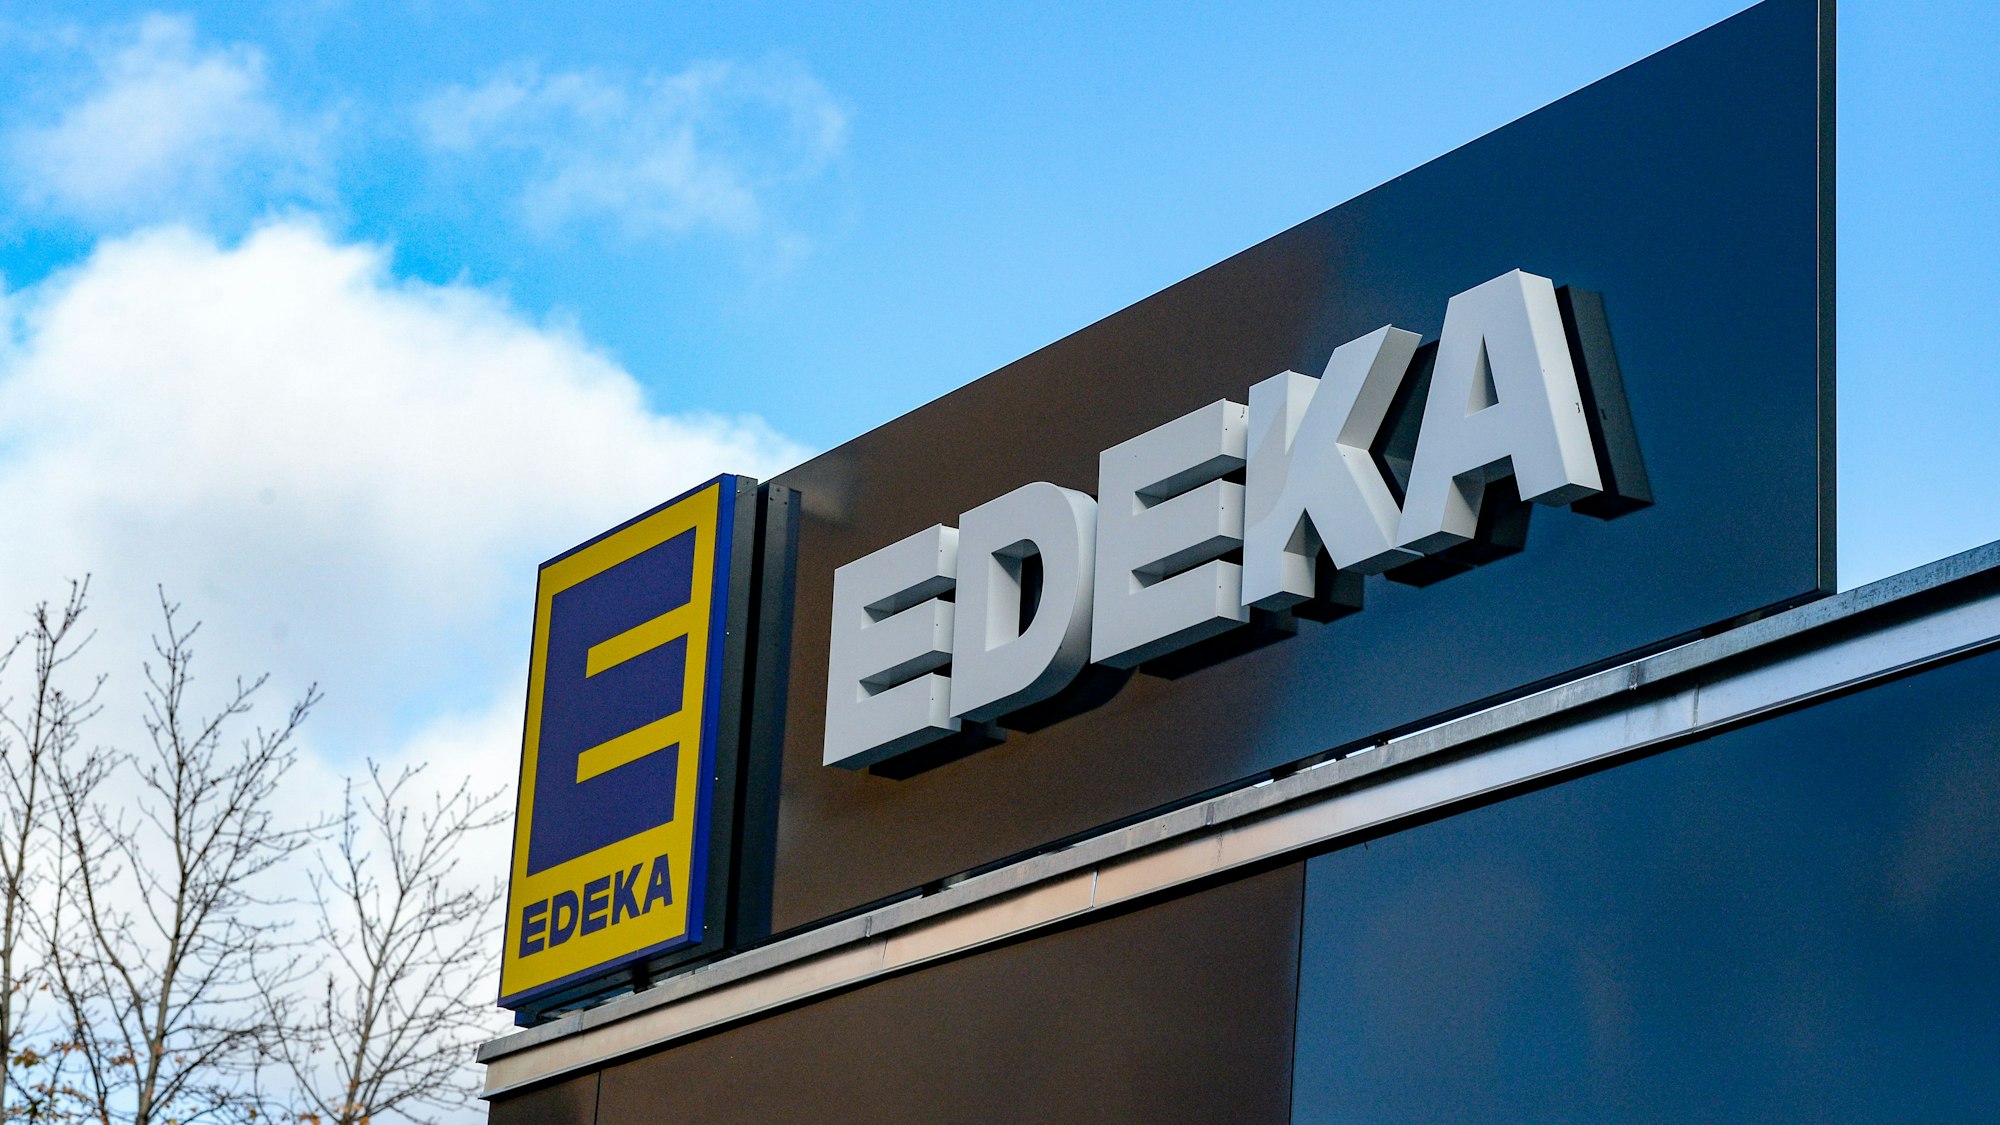 Das Logo vom Einzelhändler Edeka.